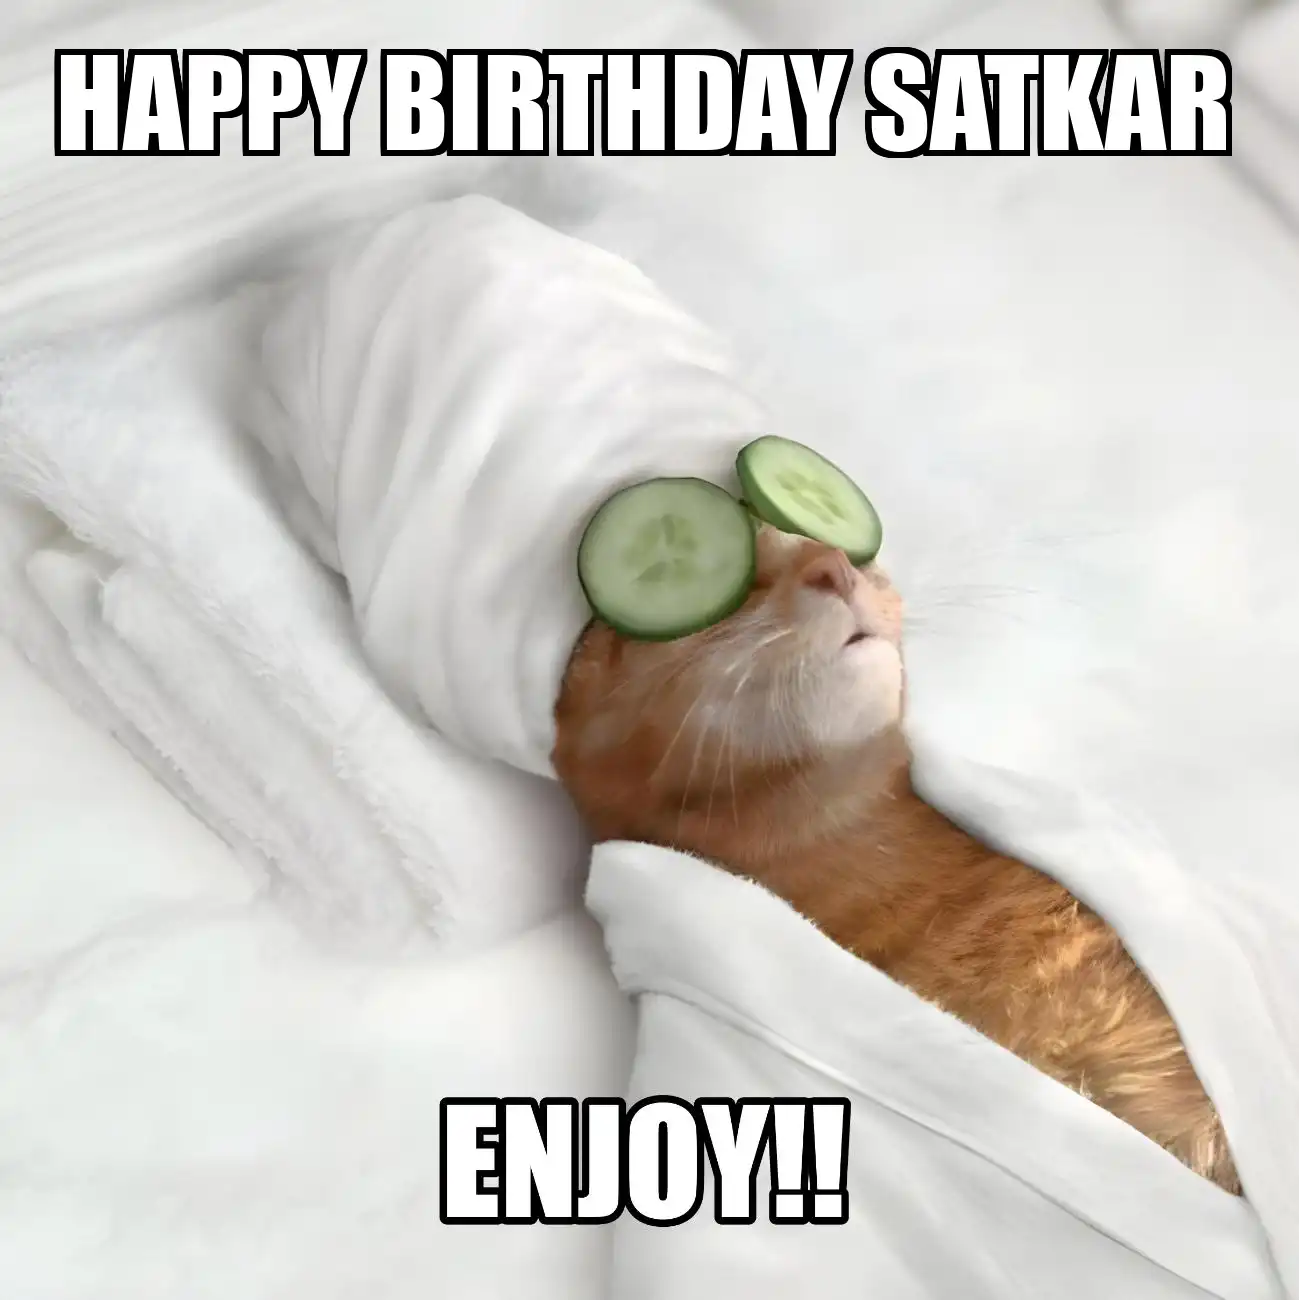 Happy Birthday Satkar Enjoy Cat Meme